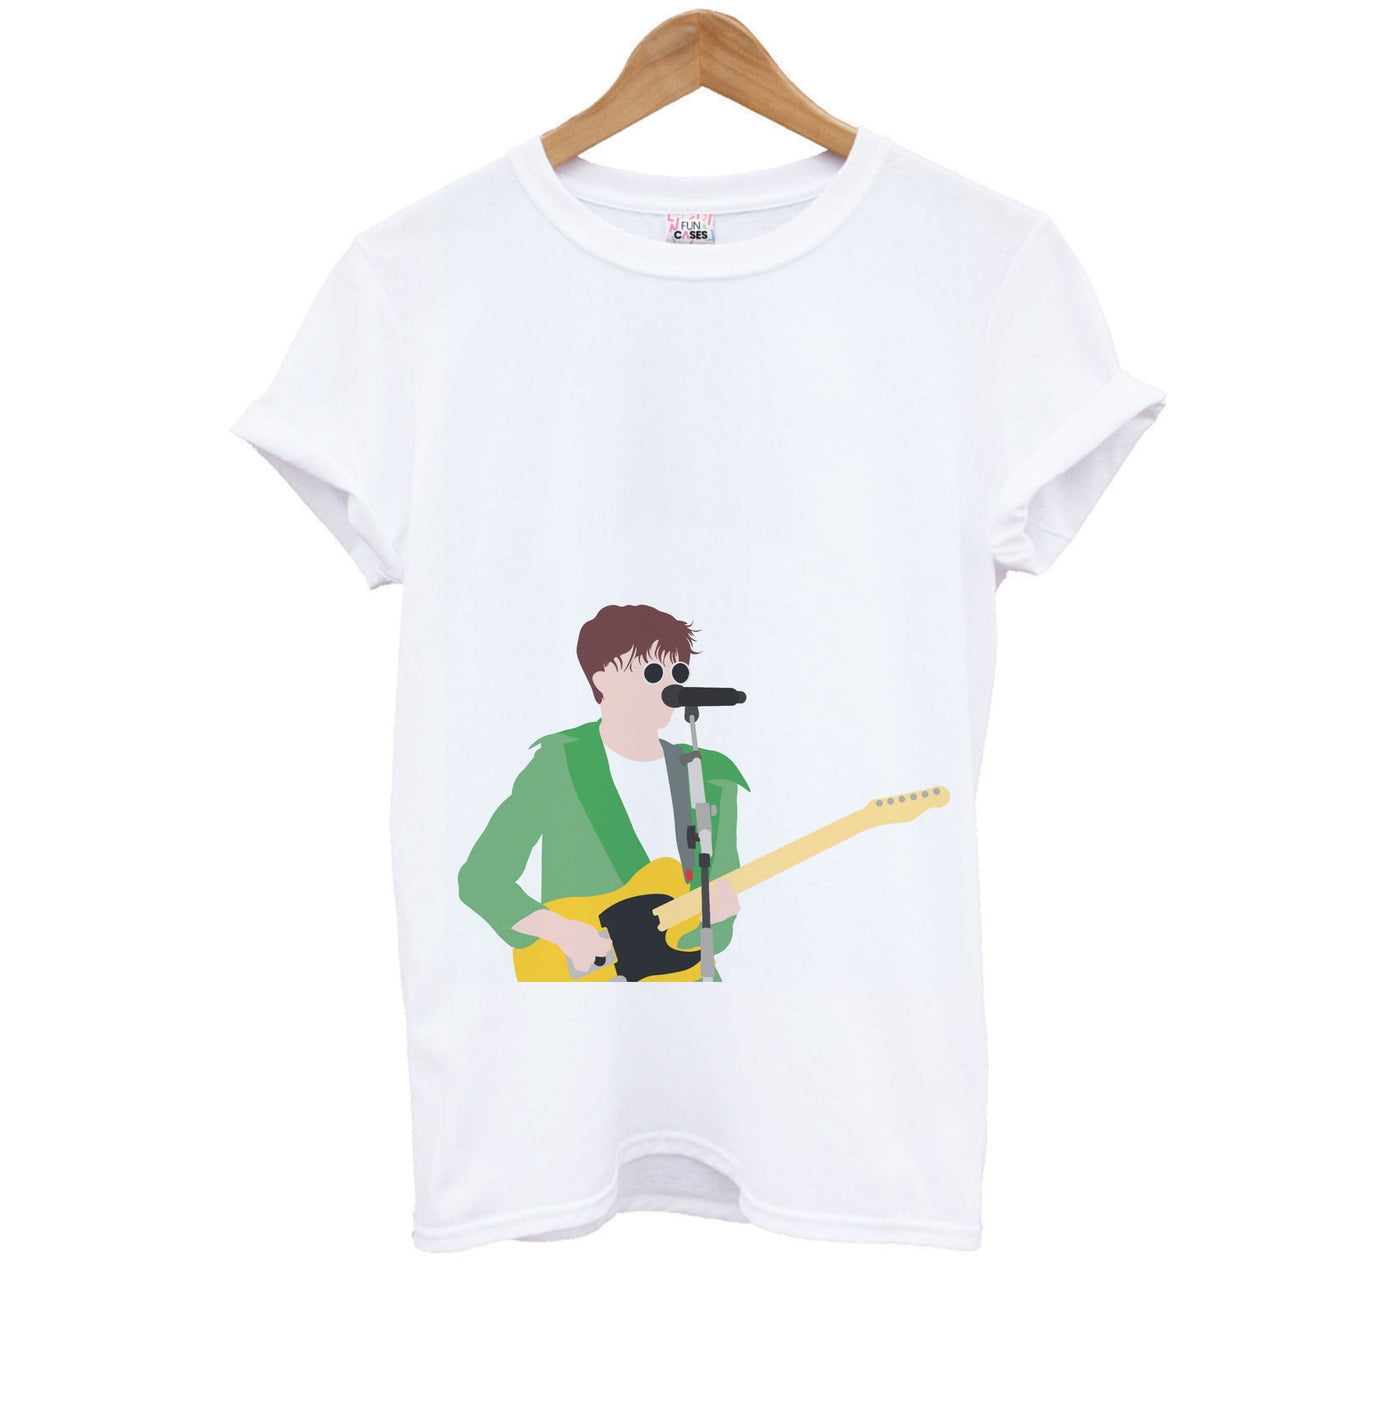 Performance - Declan Mckenna Kids T-Shirt